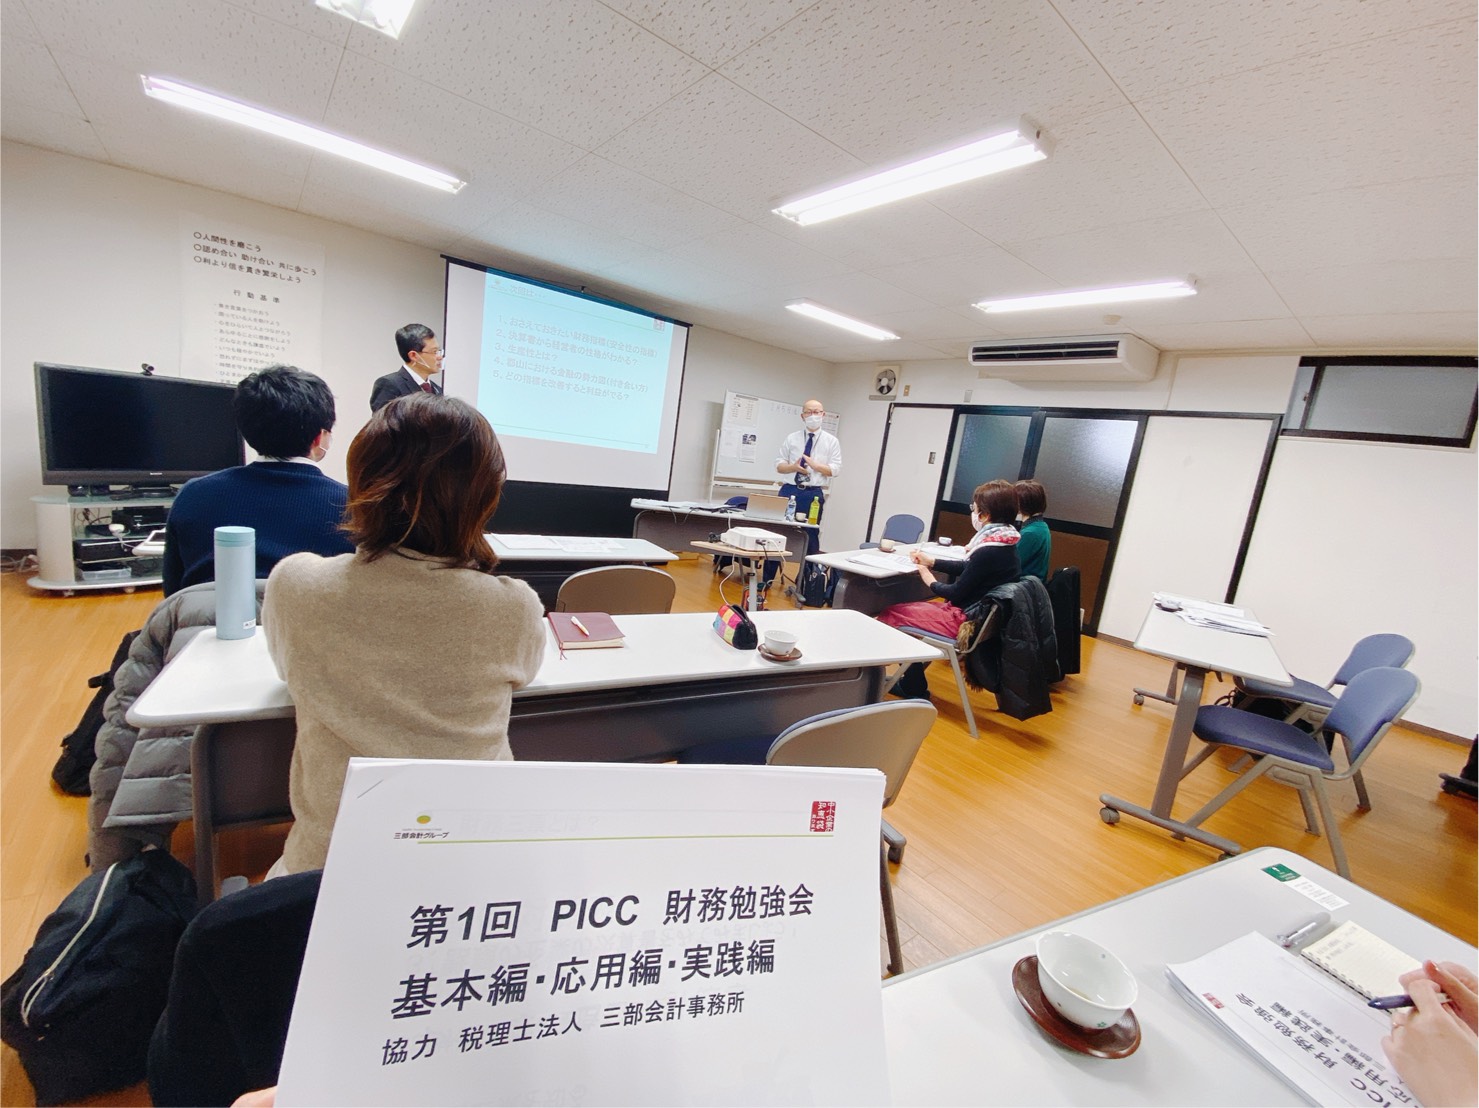 【PICC福島支部設立準備委員会】第1回目 財務勉強会を開催しました